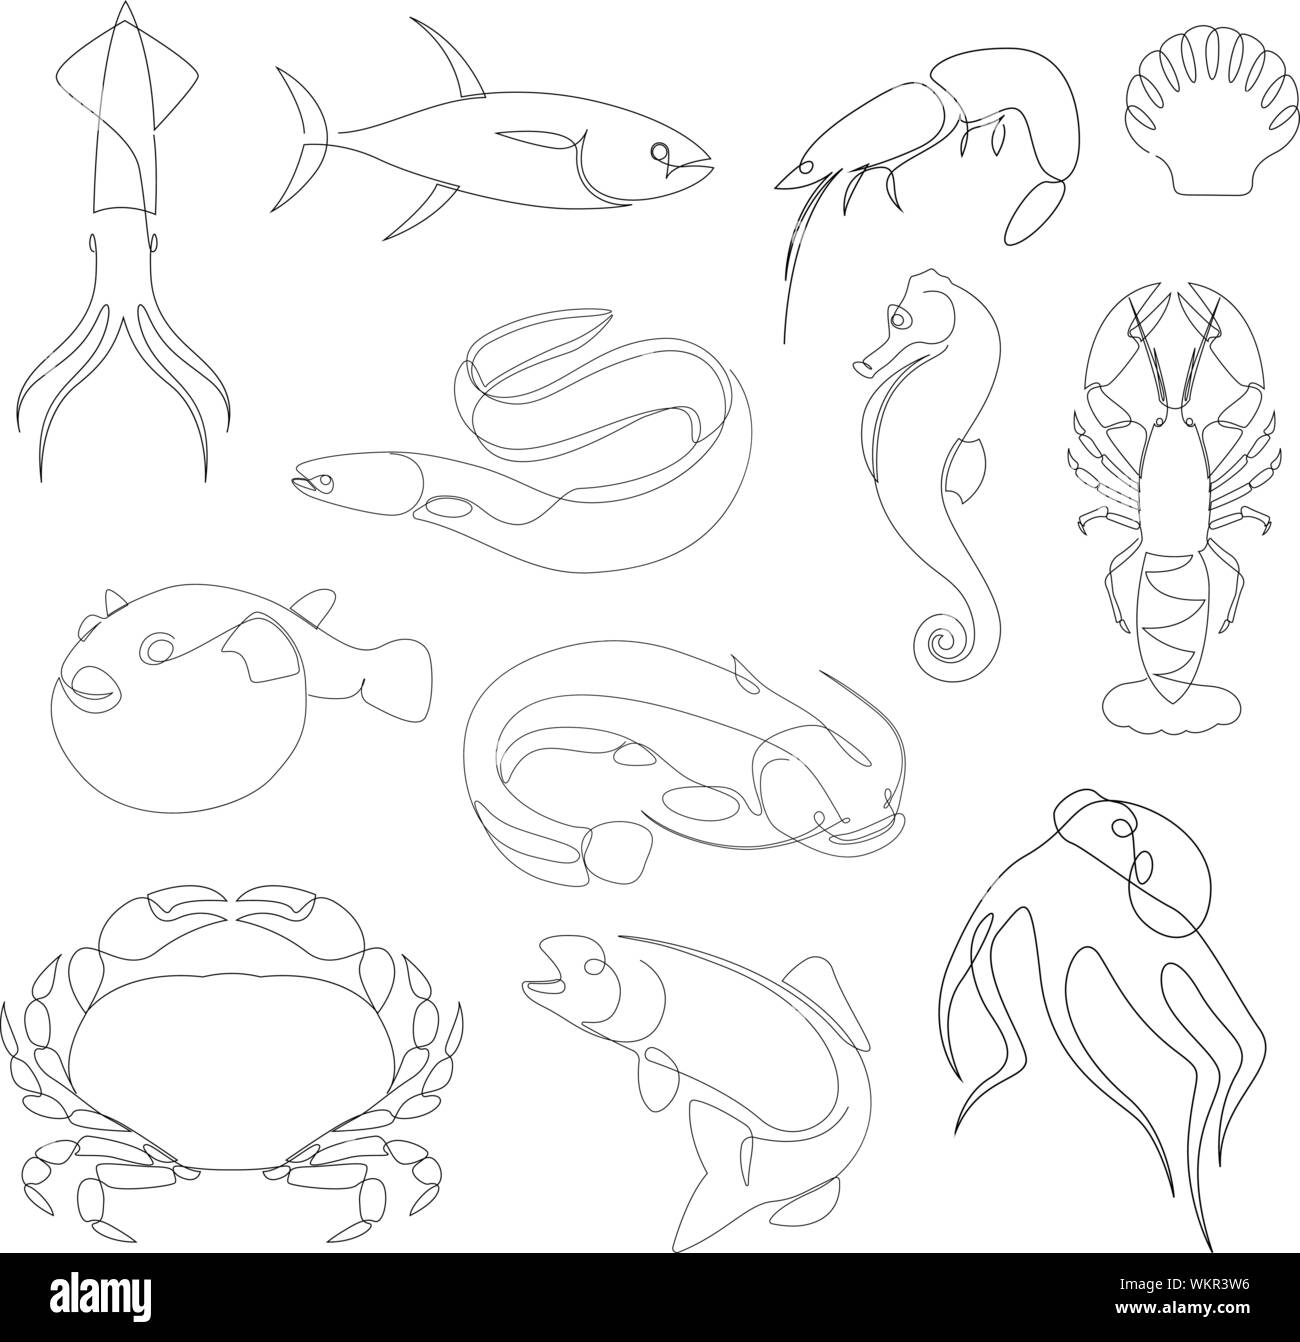 Unterwasser Tiere Sammlung durch eine Linie gezeichnet. Minimalistischer Stil, Meer und Ozean Kreaturen. Vector Illustration Stock Vektor